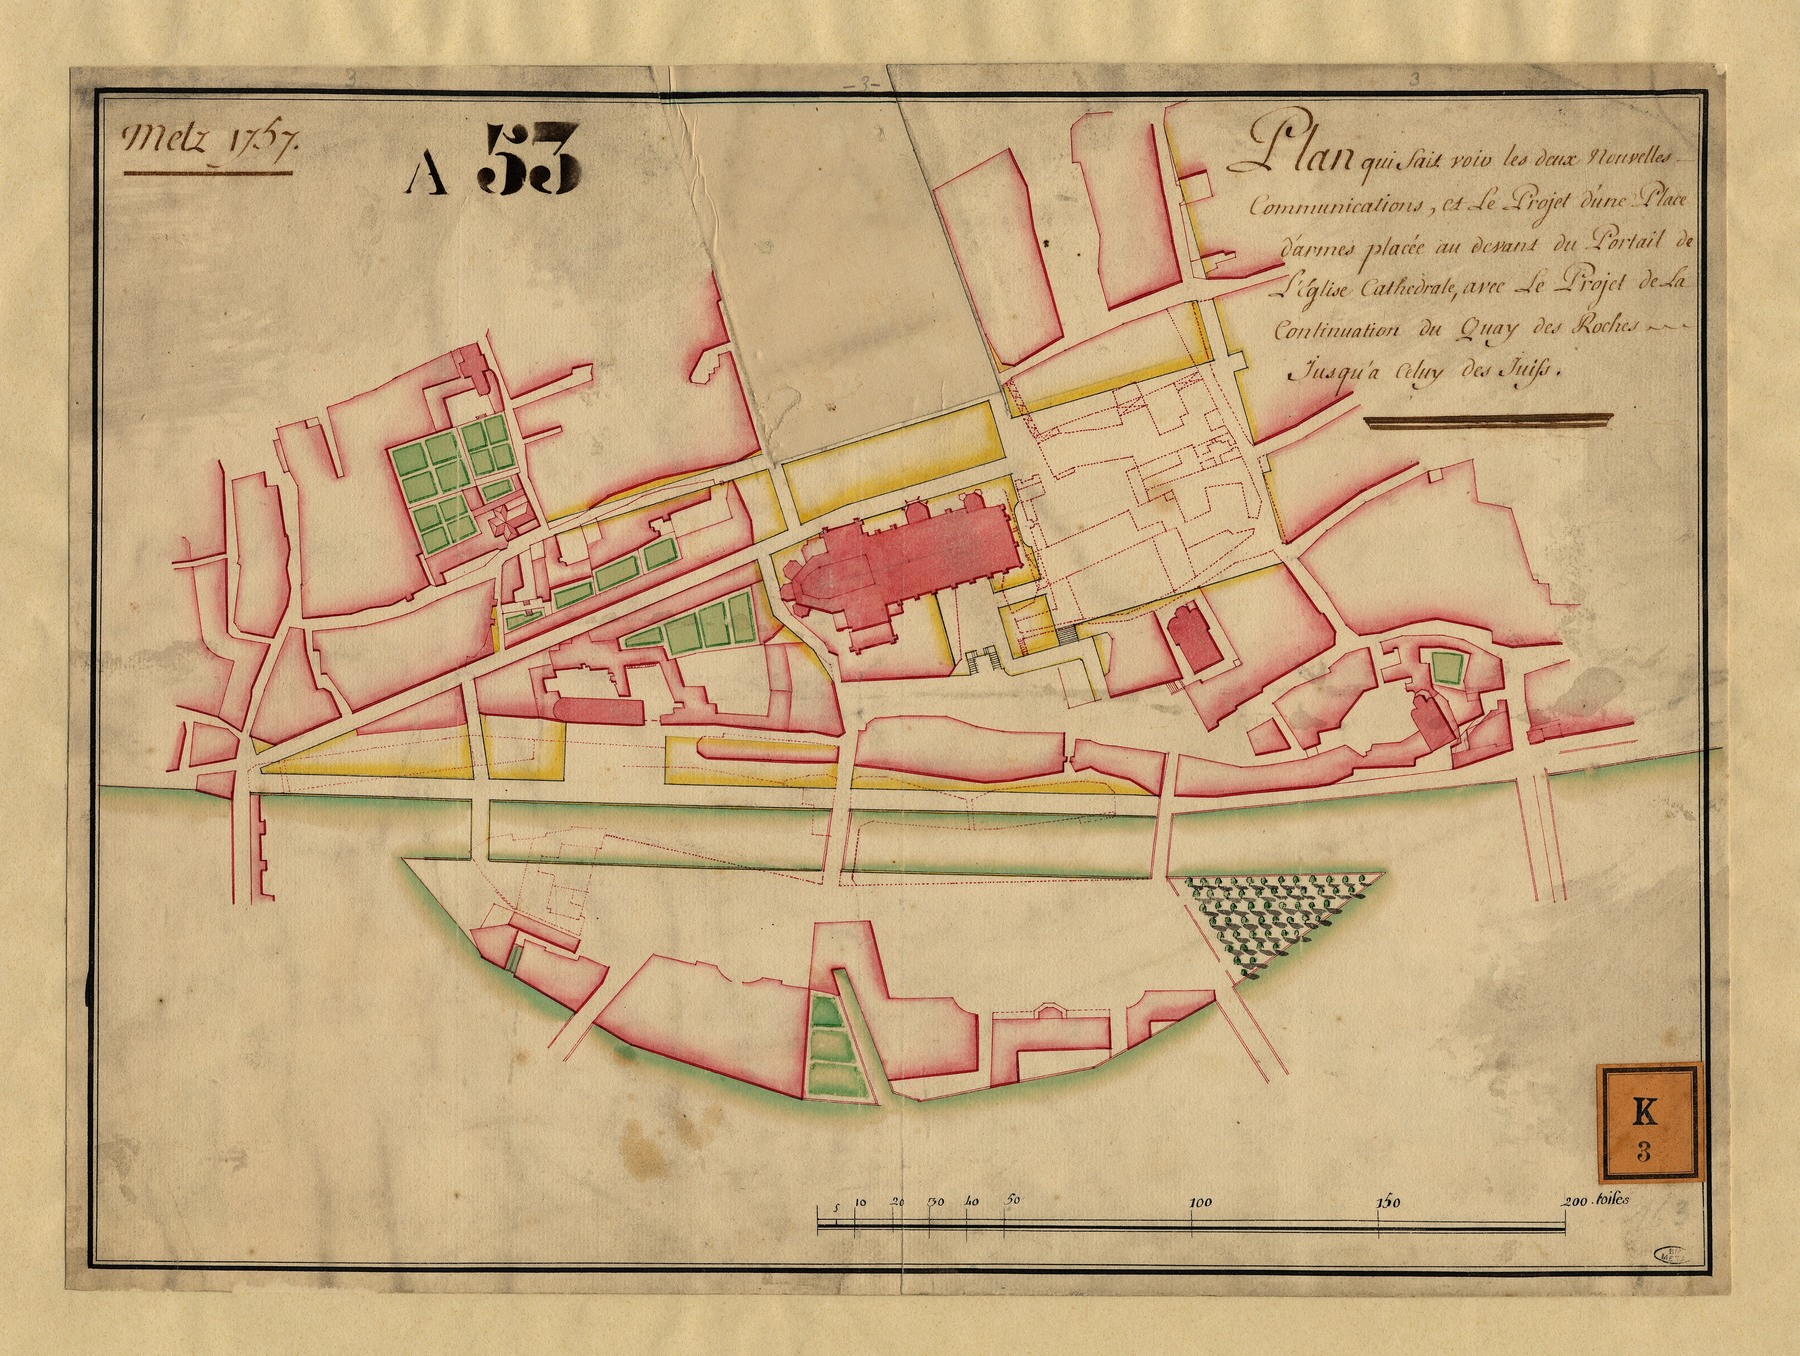 Contenu du Metz 1757 : Plan qui fait voir les 2 nouvelles communications et le projet d'une place d'armes